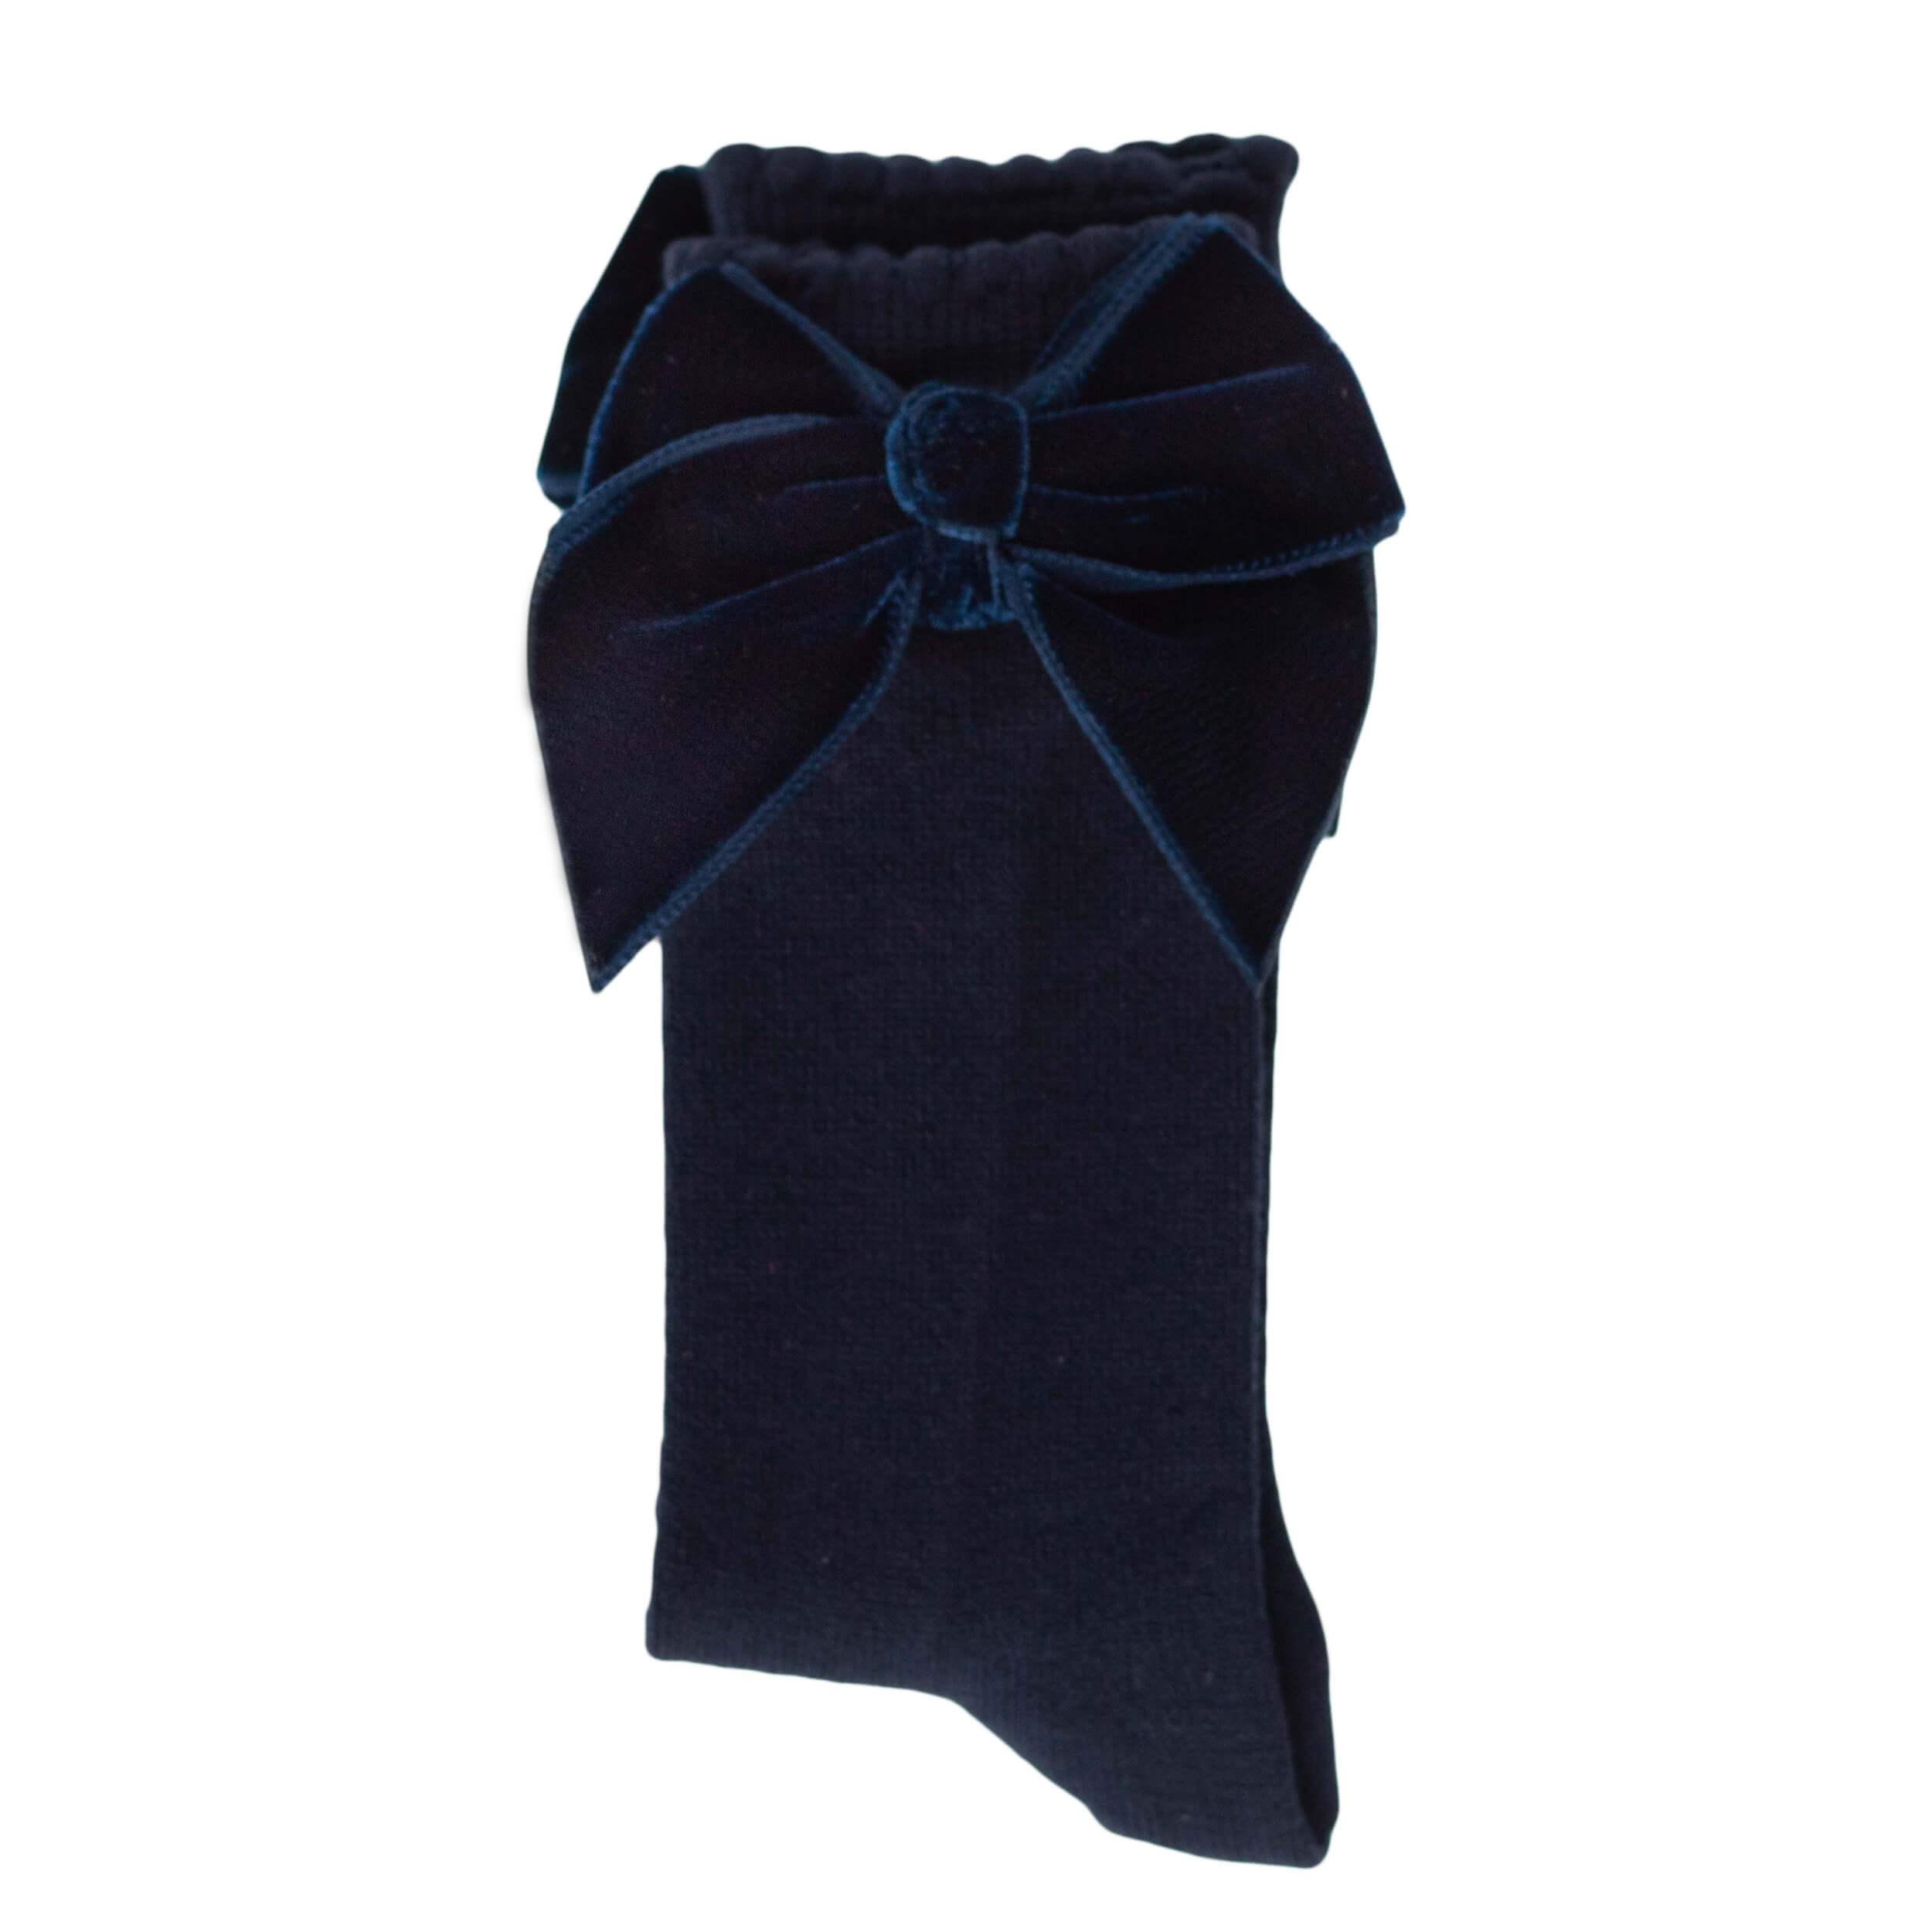 velvet bow spanish baby socks, navy